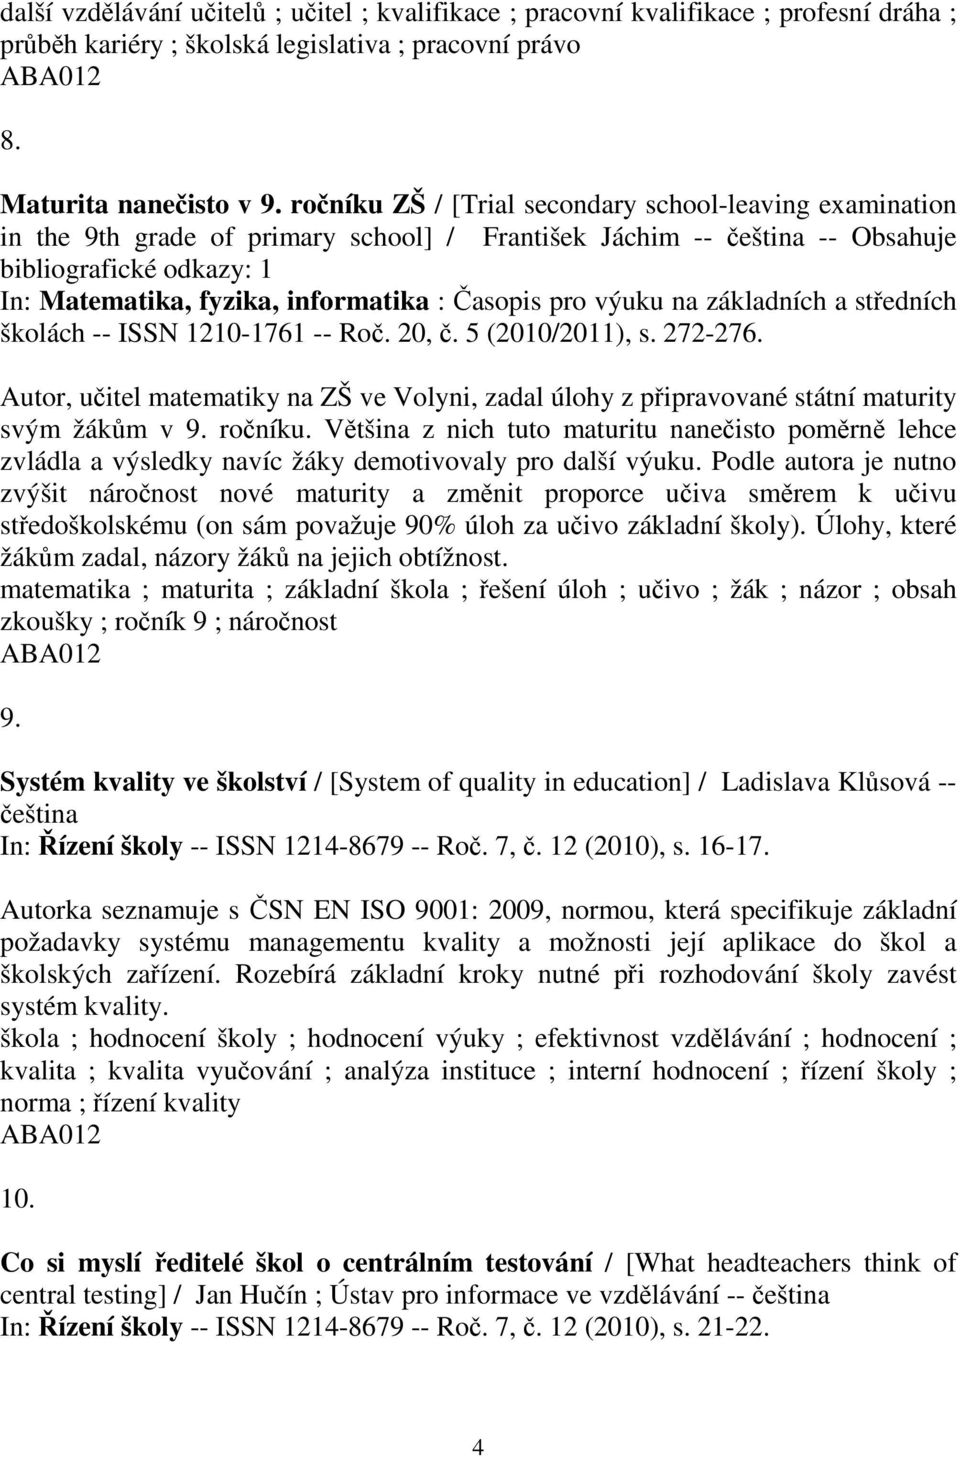 asopis pro výuku na základních a stedních školách -- ISSN 1210-1761 -- Ro. 20,. 5 (2010/2011), s. 272-276.